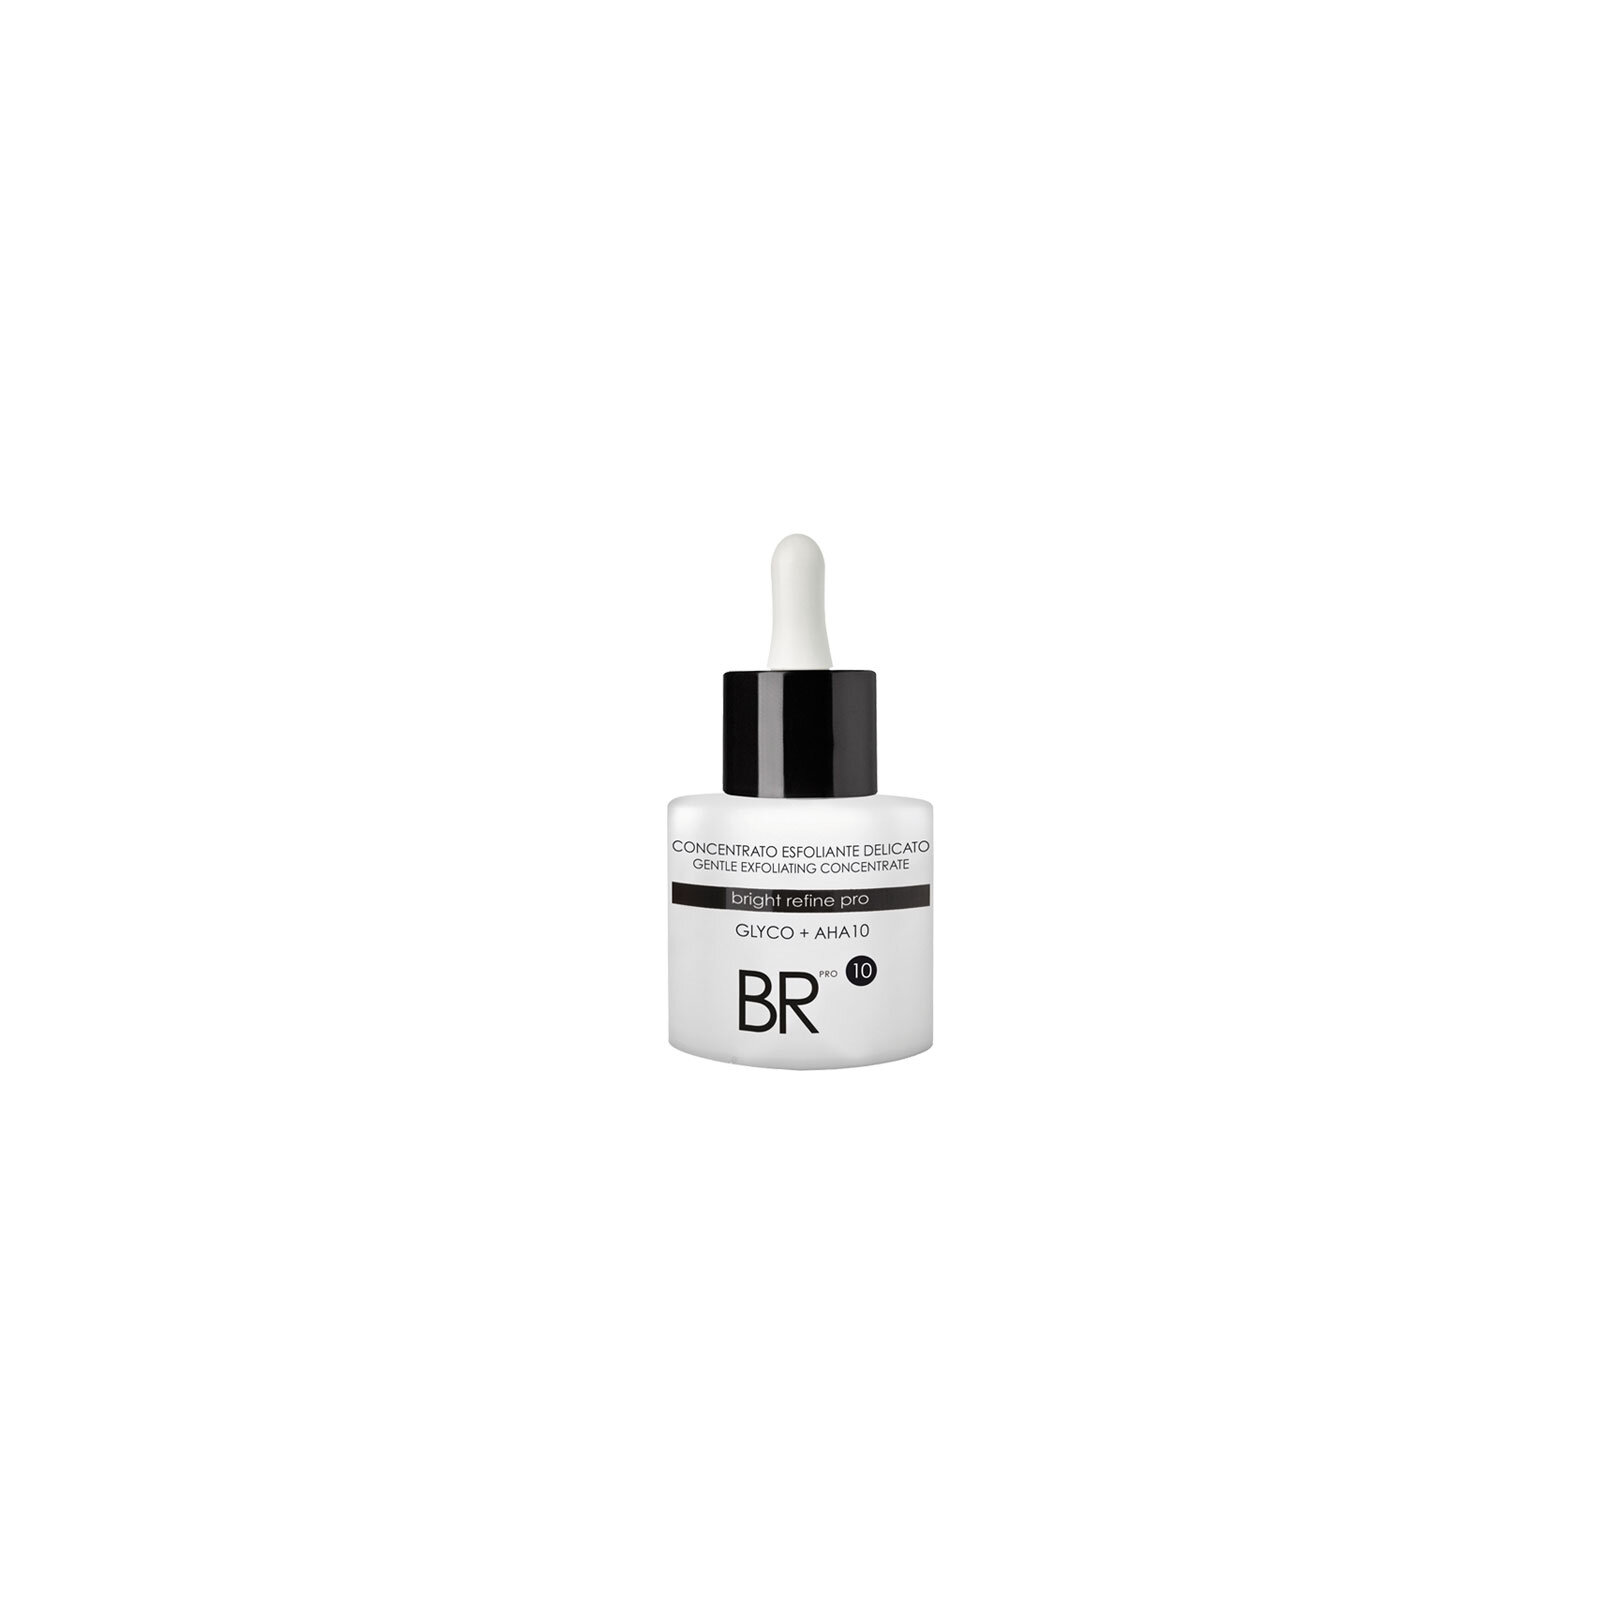 BR_concentrato-exfoliante-delicato- 15 ml.jpg